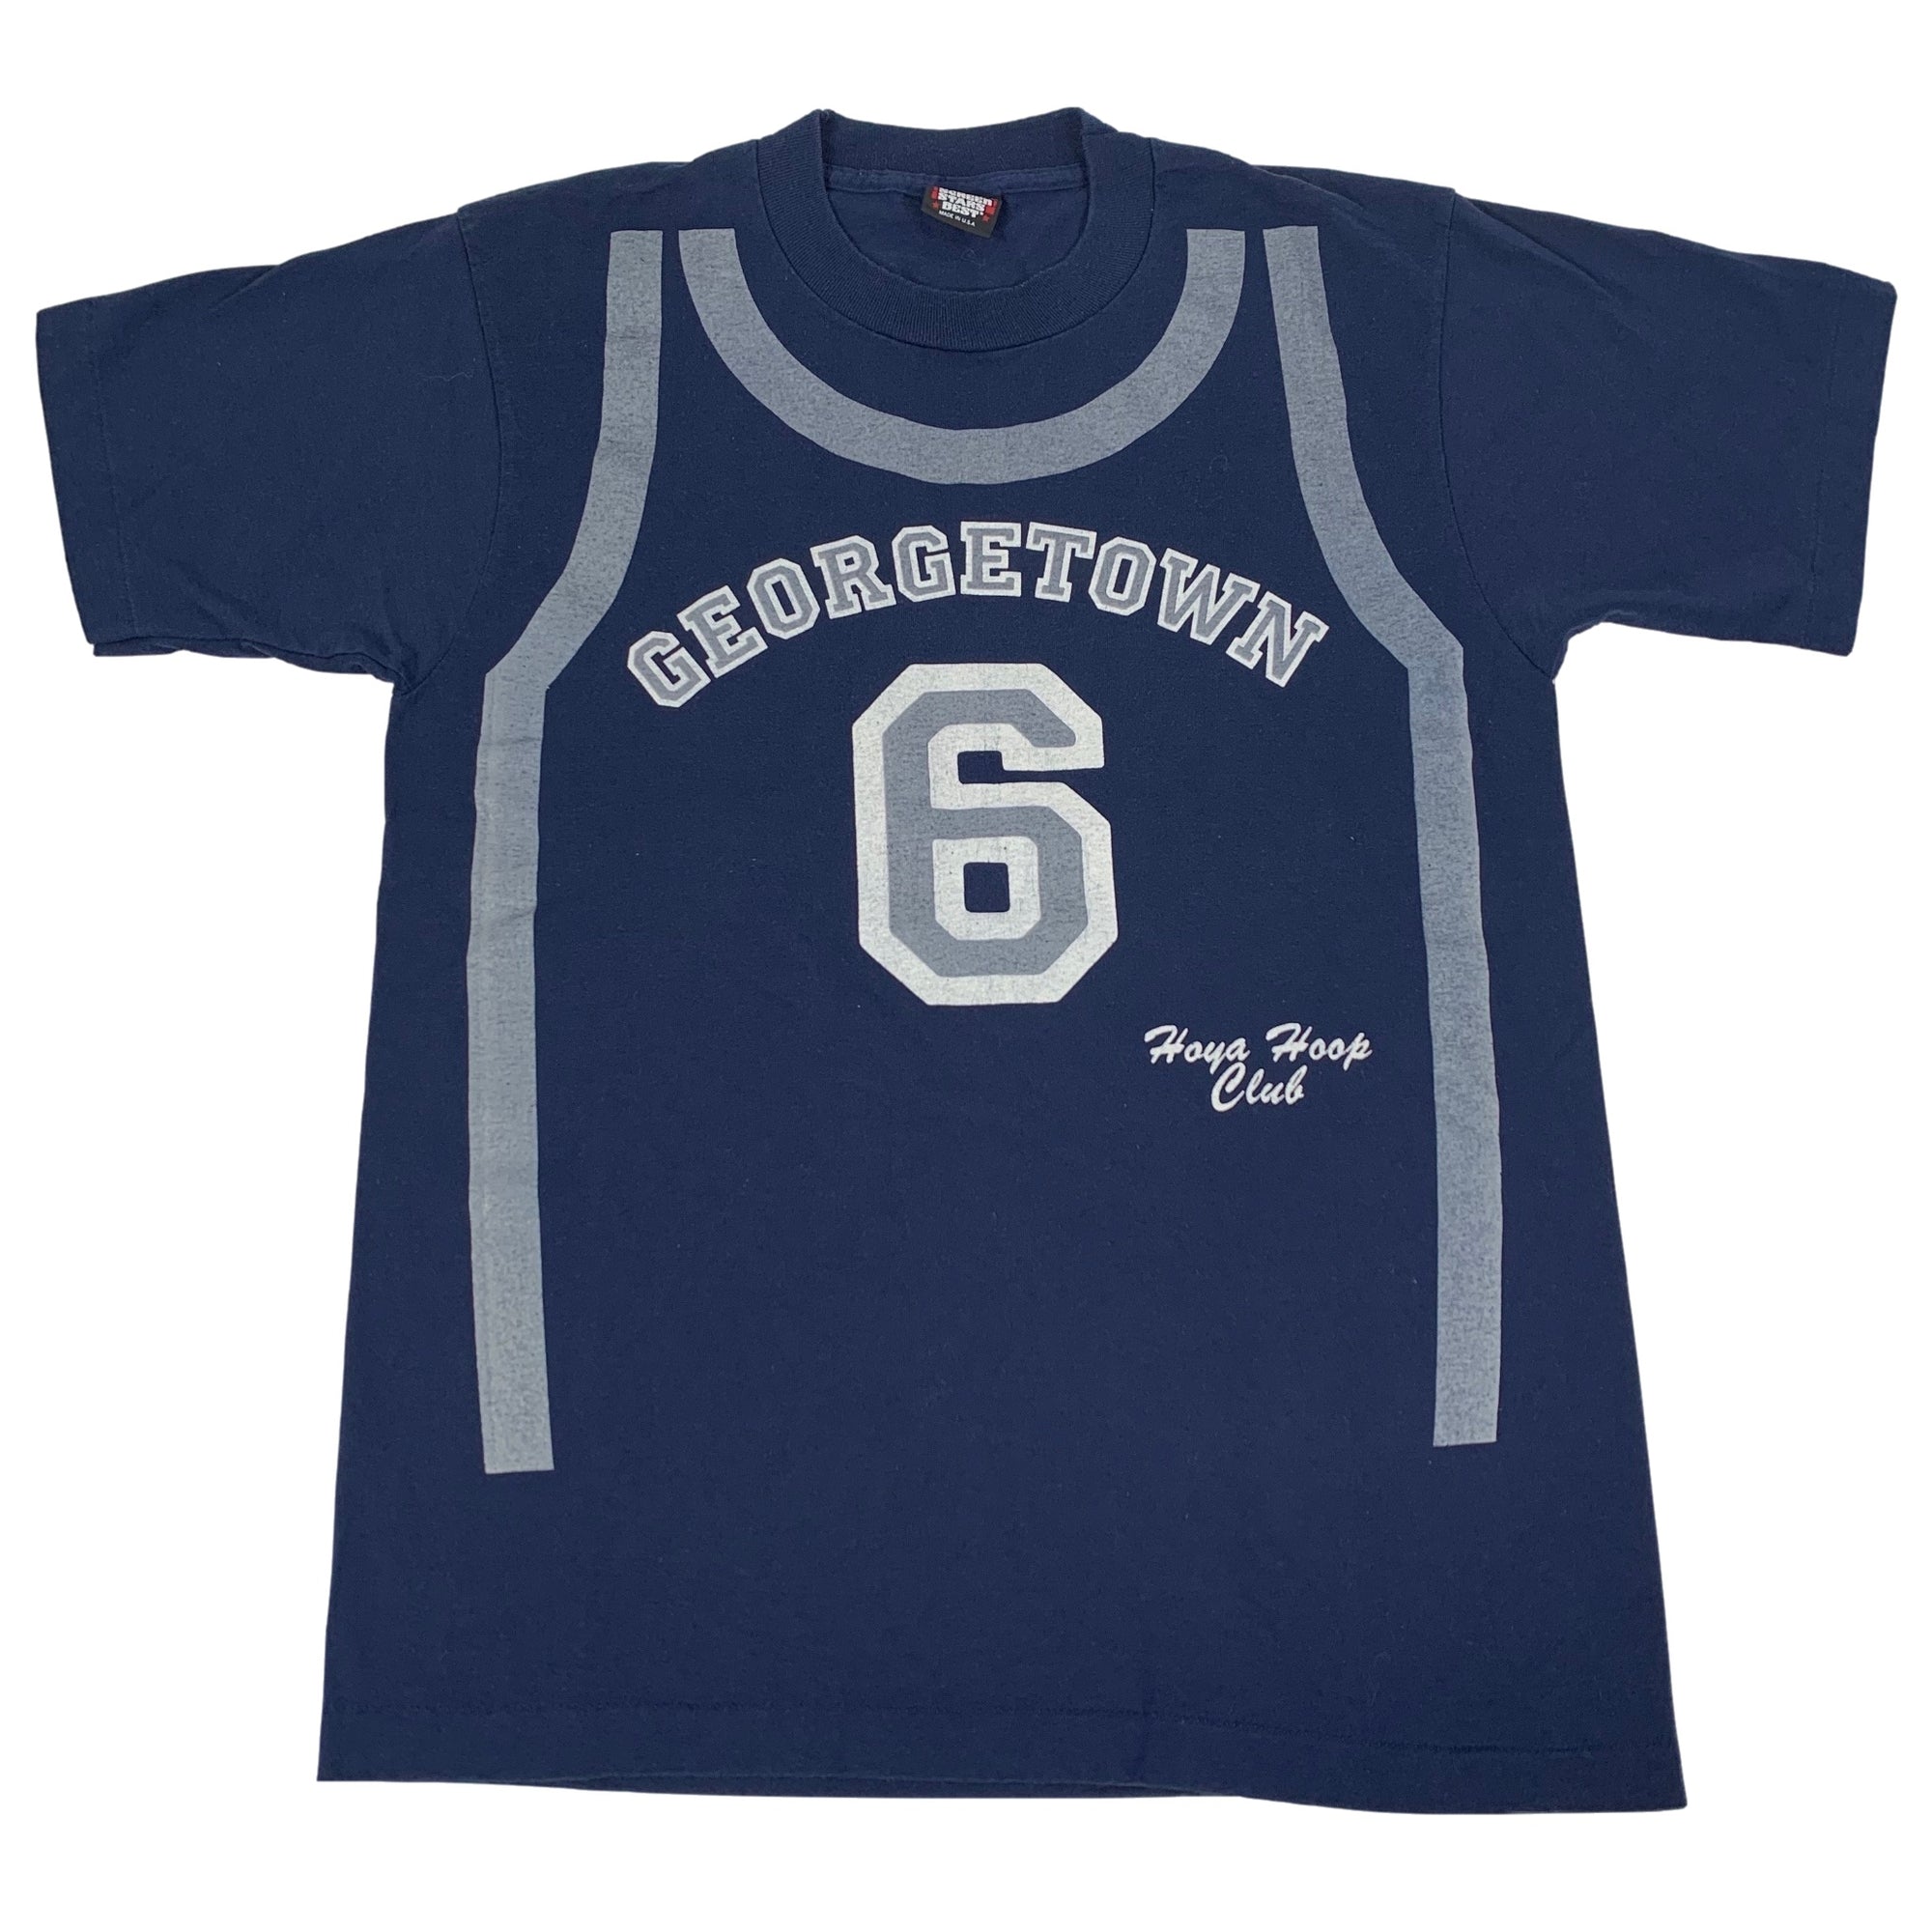 Vintage Georgetown Hoyas "Hoyas Hoop Club" T-Shirt - jointcustodydc